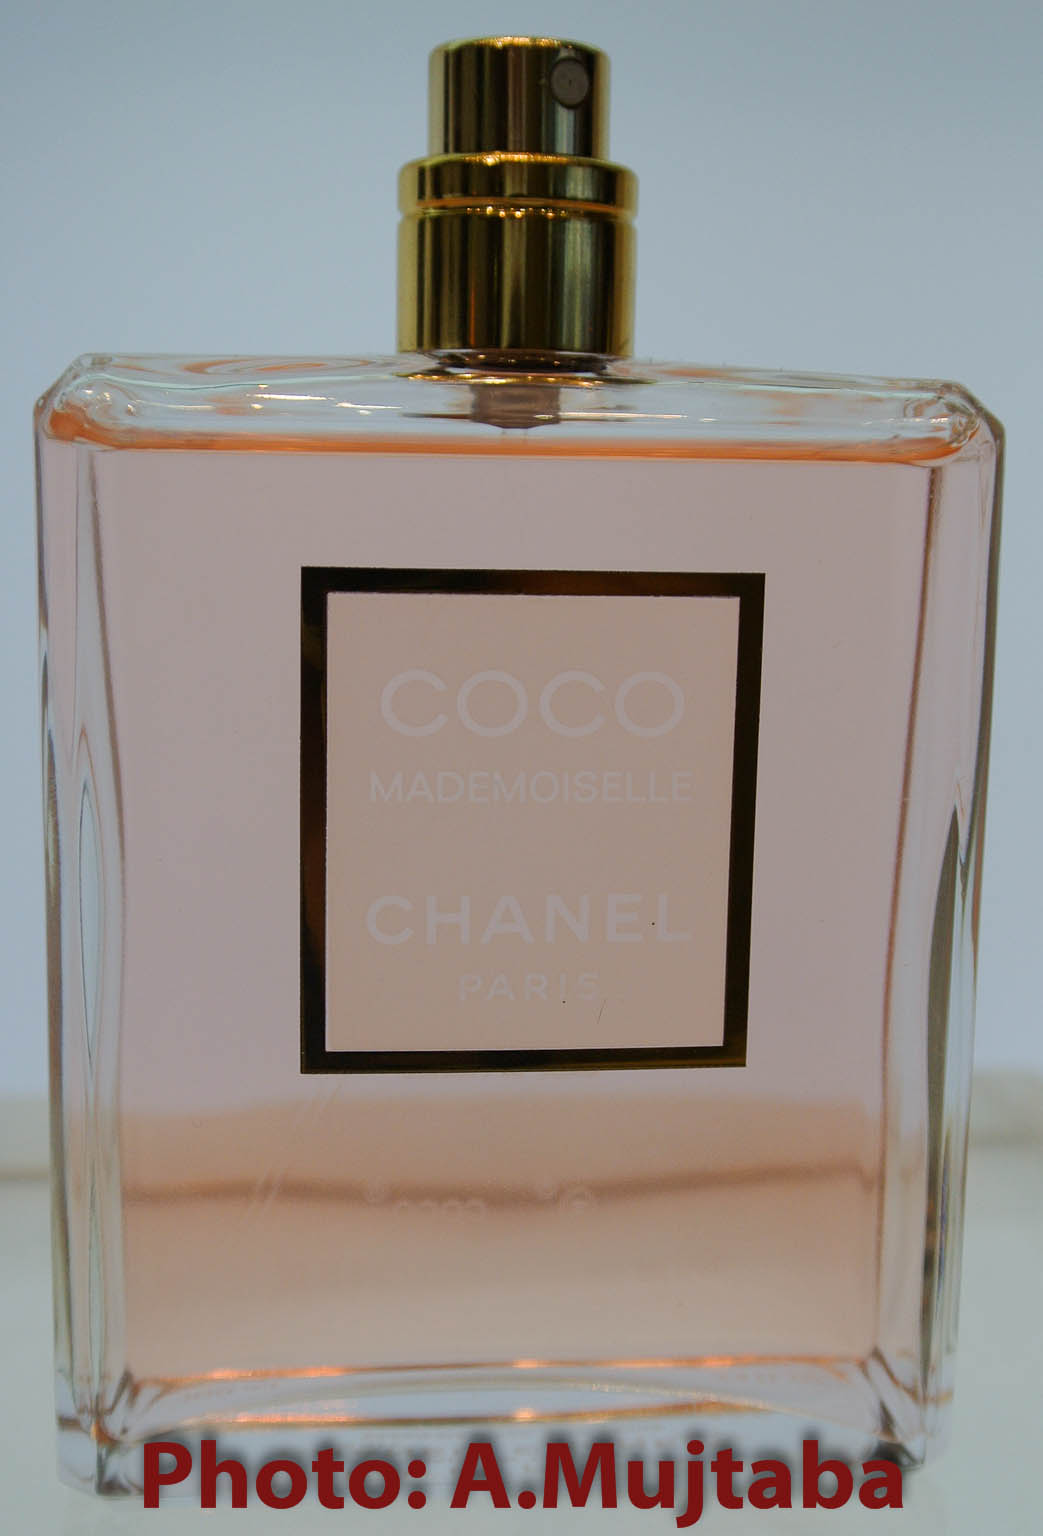 Connoisseur De Parfum: Perfume Review: Chanel Coco Mademoiselle (Eau De ...